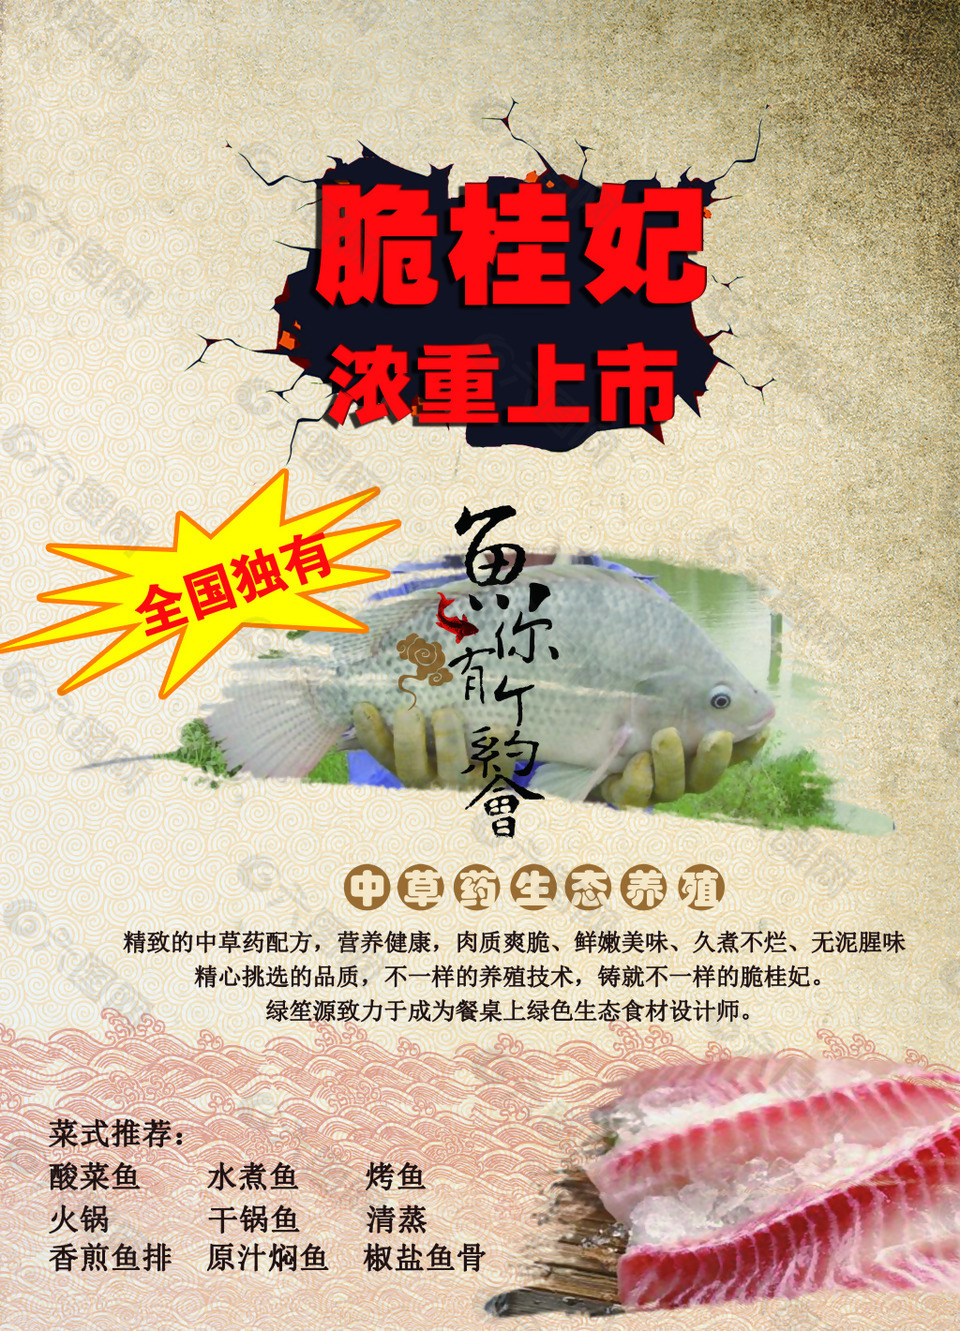 深圳宣传海报